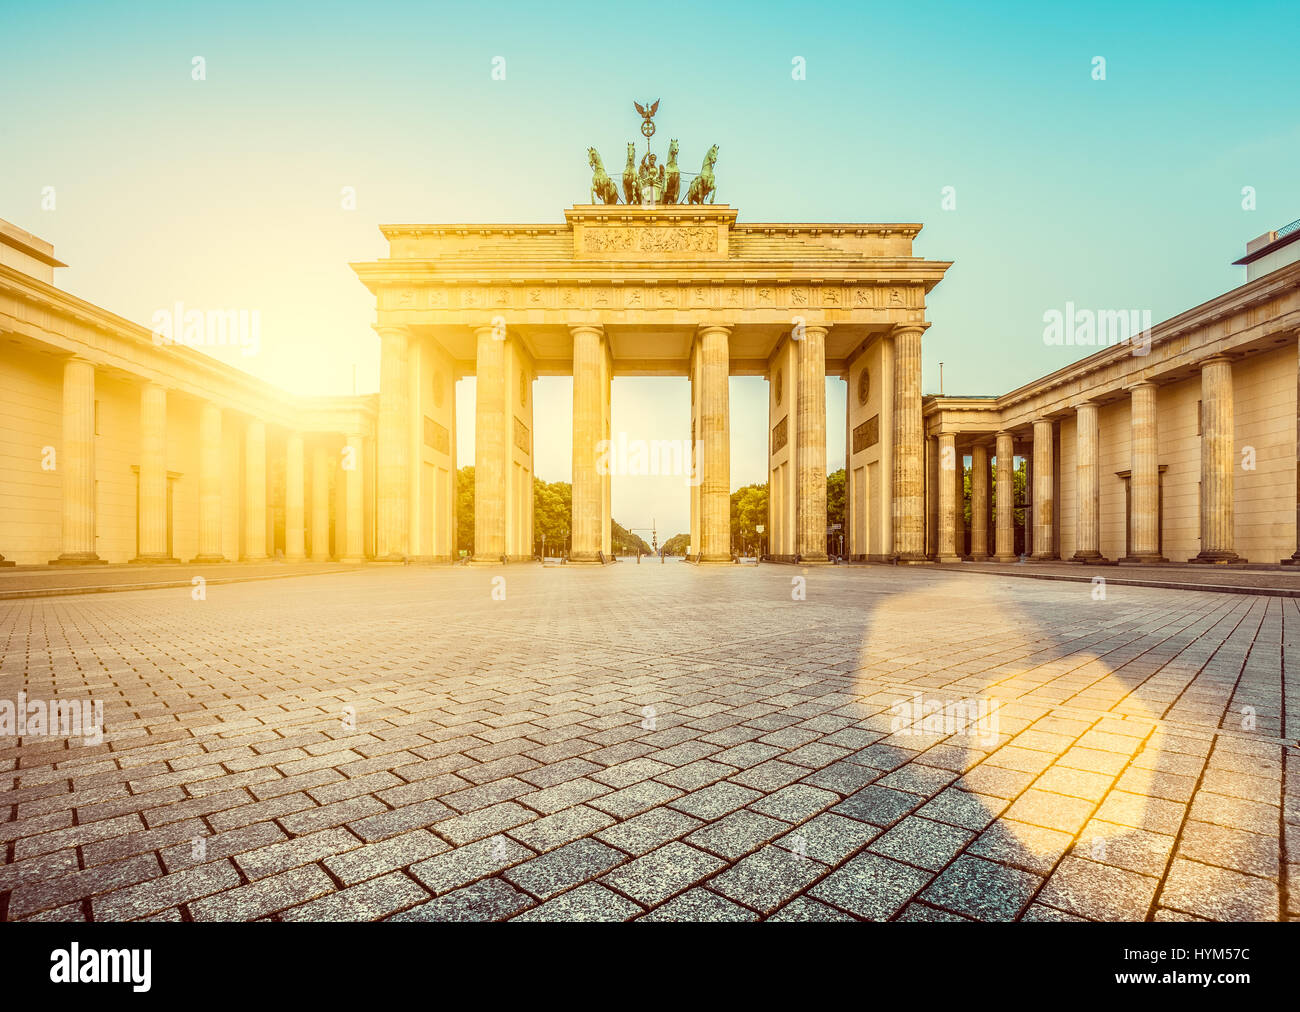 Célèbre Brandenburger Tor (Porte de Brandebourg), l'un des plus célèbres monuments et symboles nationaux de l'Allemagne, dans la belle lumière du matin au soleil d'or Banque D'Images